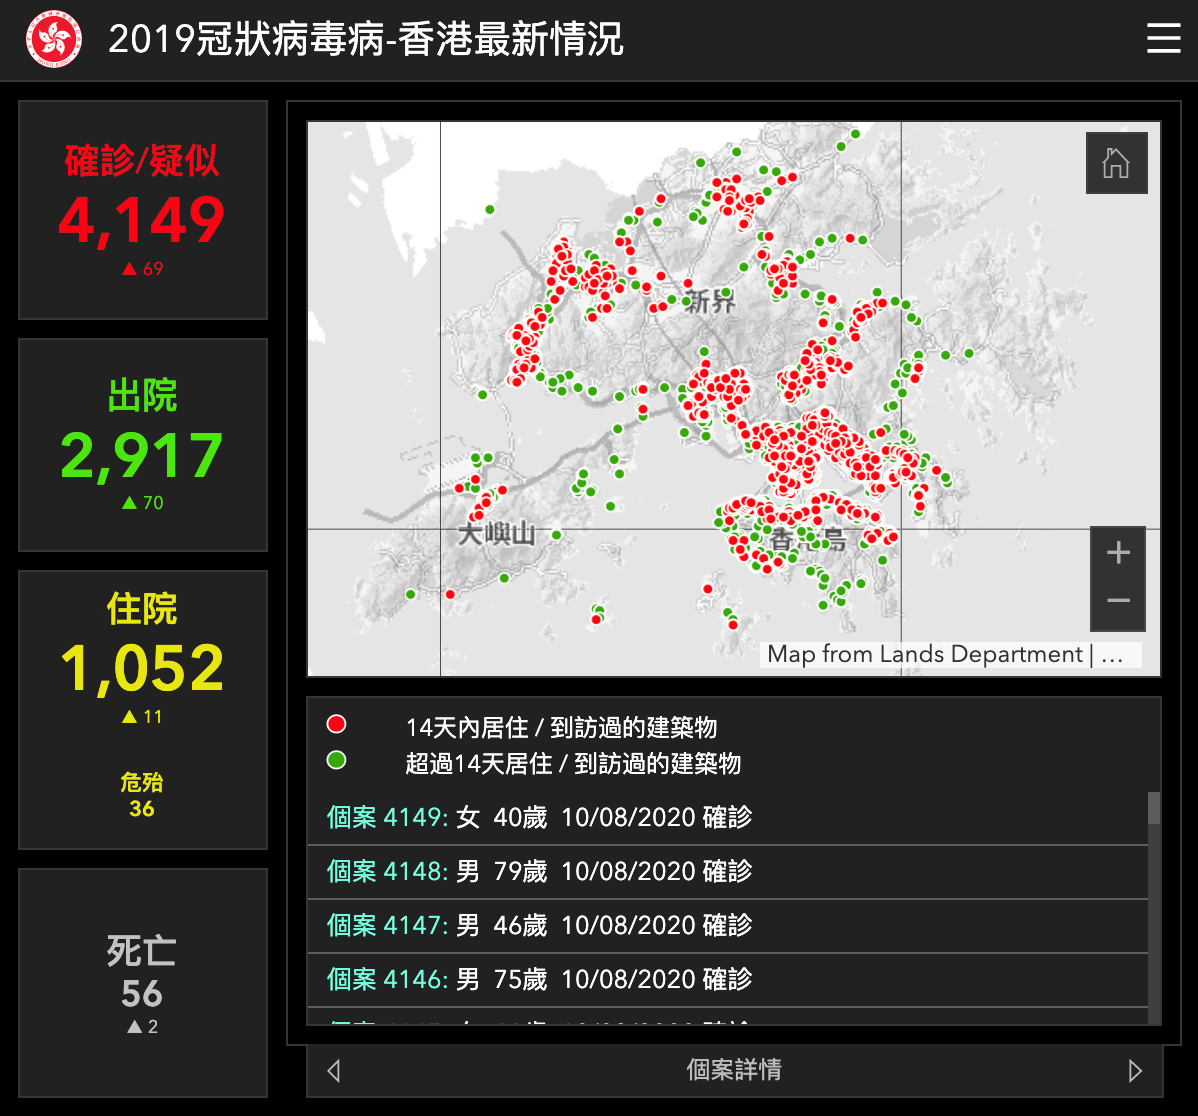 香港疫情分布地图图片